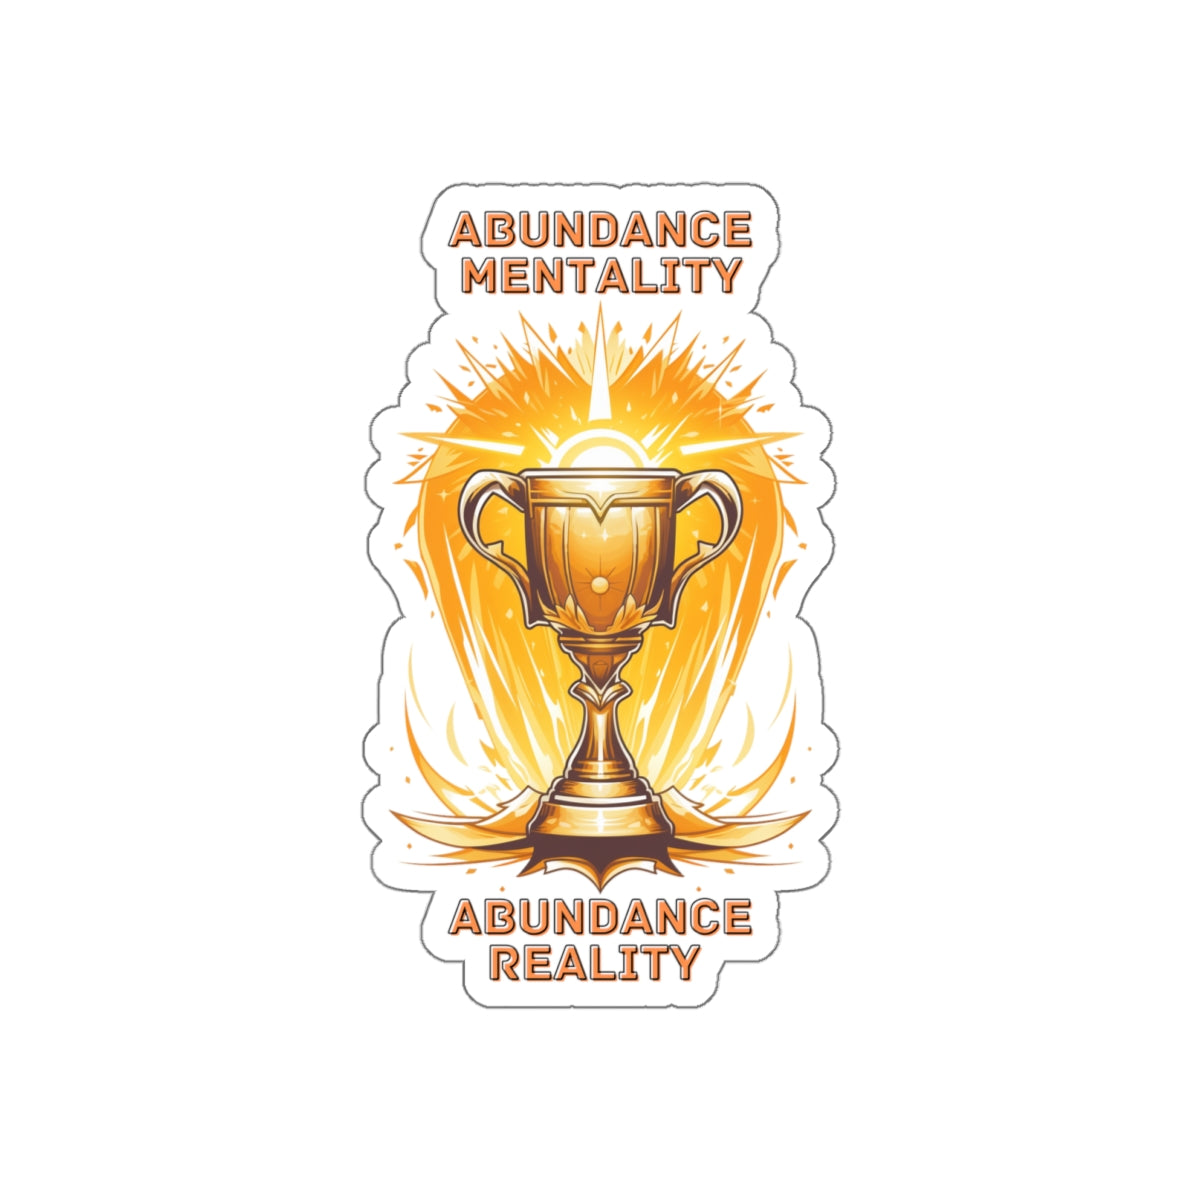 Abundance Reality | Die Cut Sticker